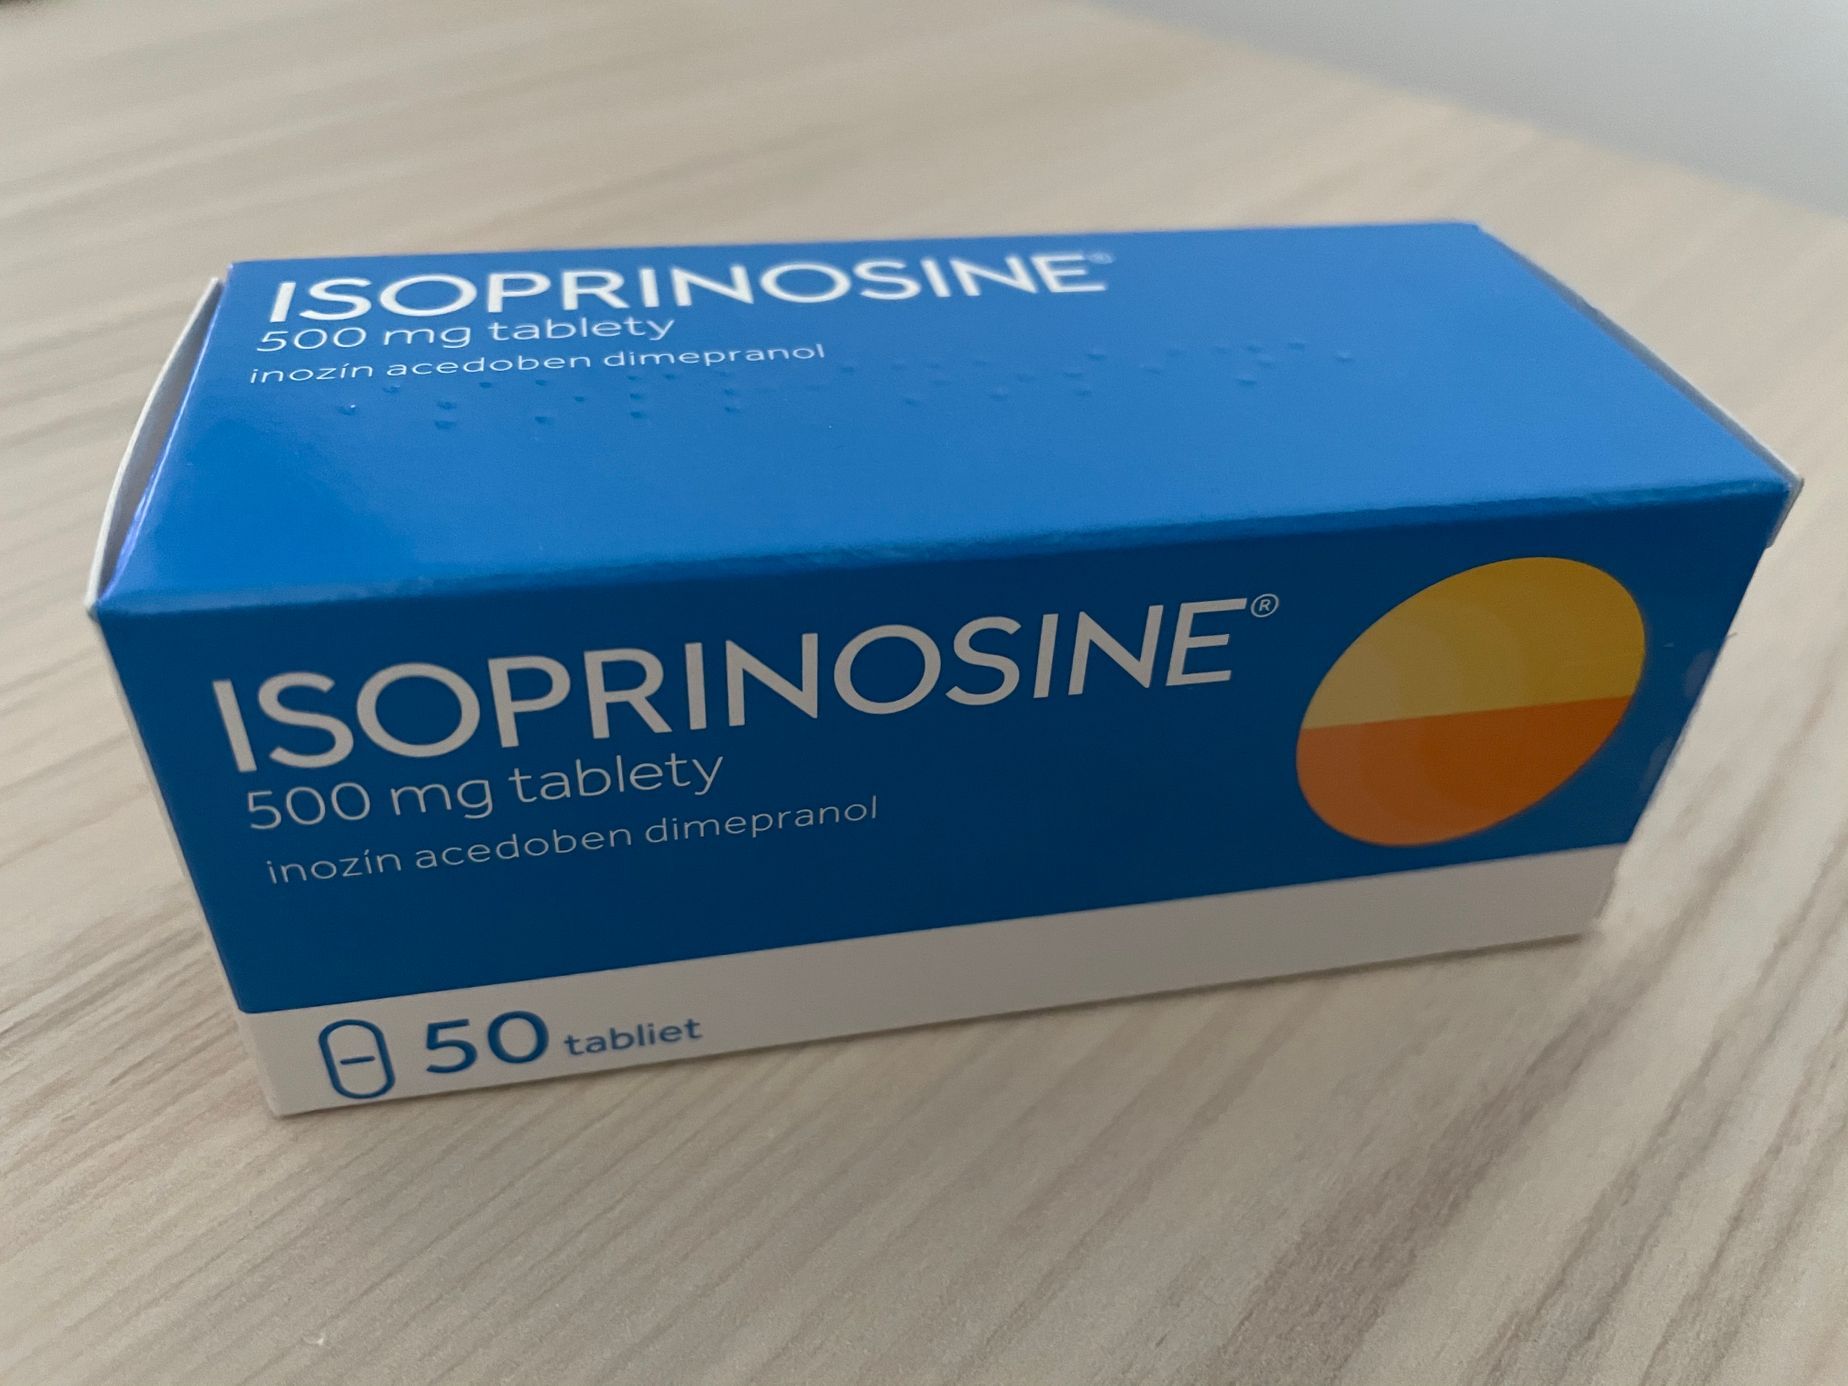 Kdy nasadit isoprinosine?